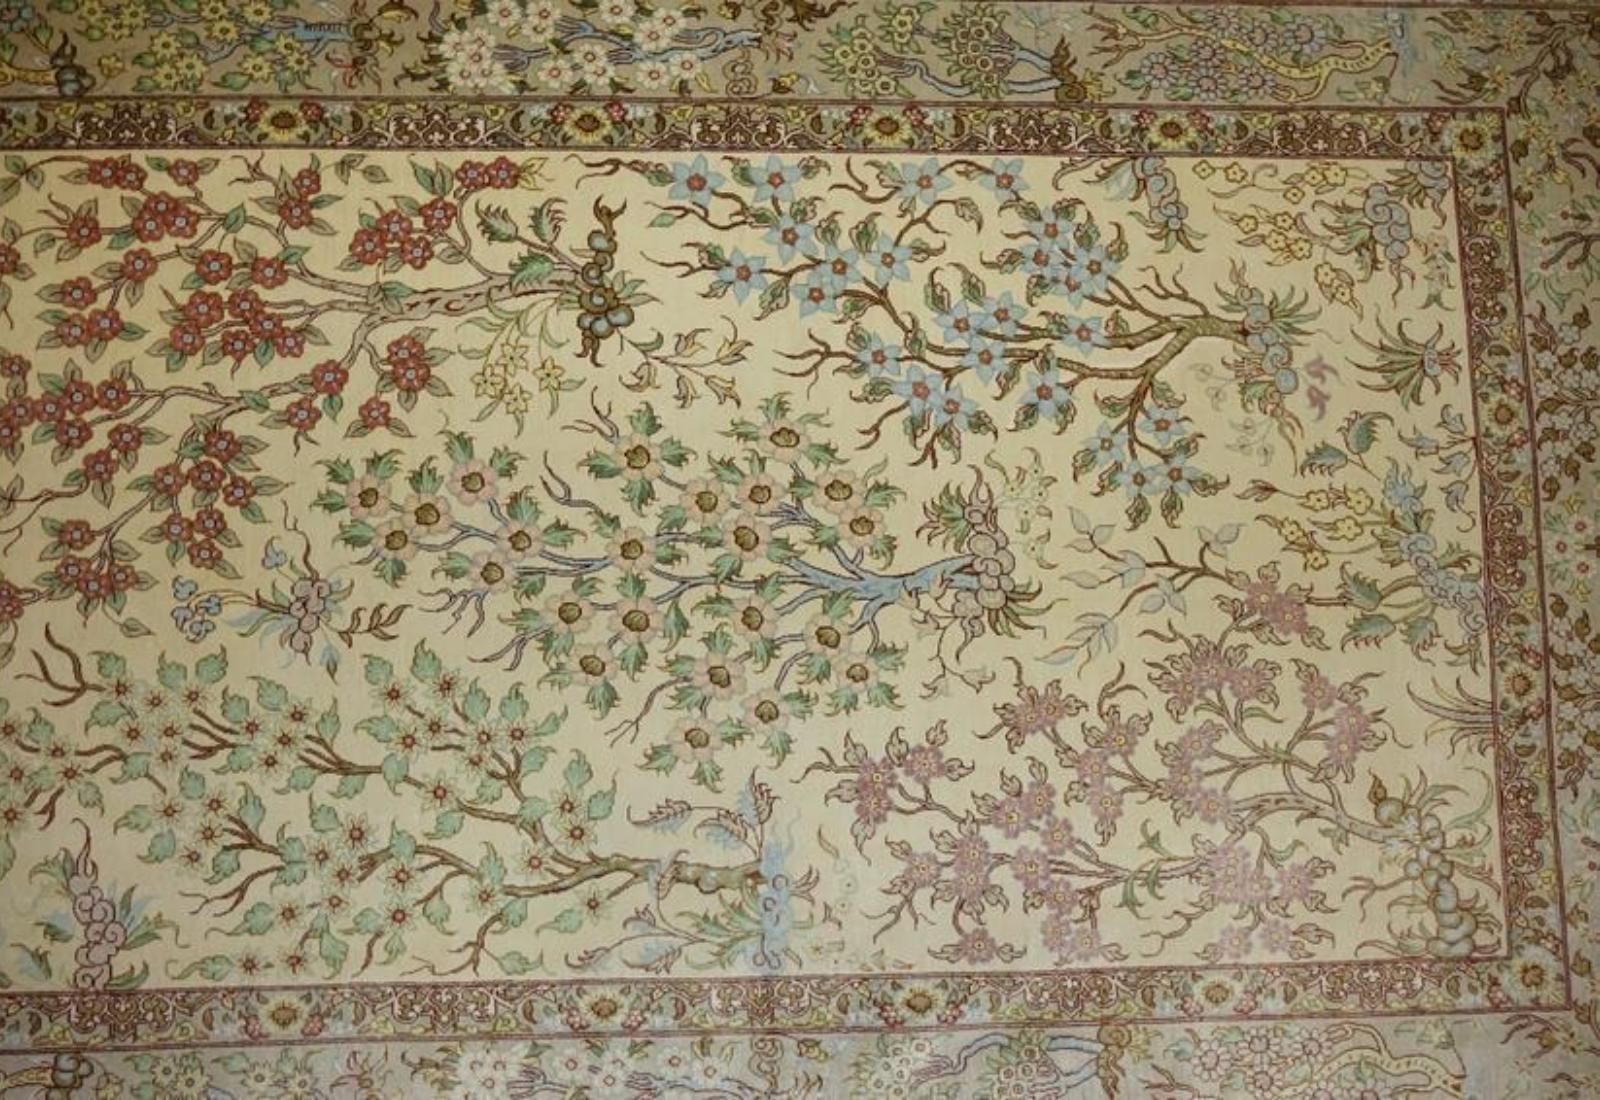 Contemporary Very fine Persian Silk Qum - 6.5' 4.4' For Sale